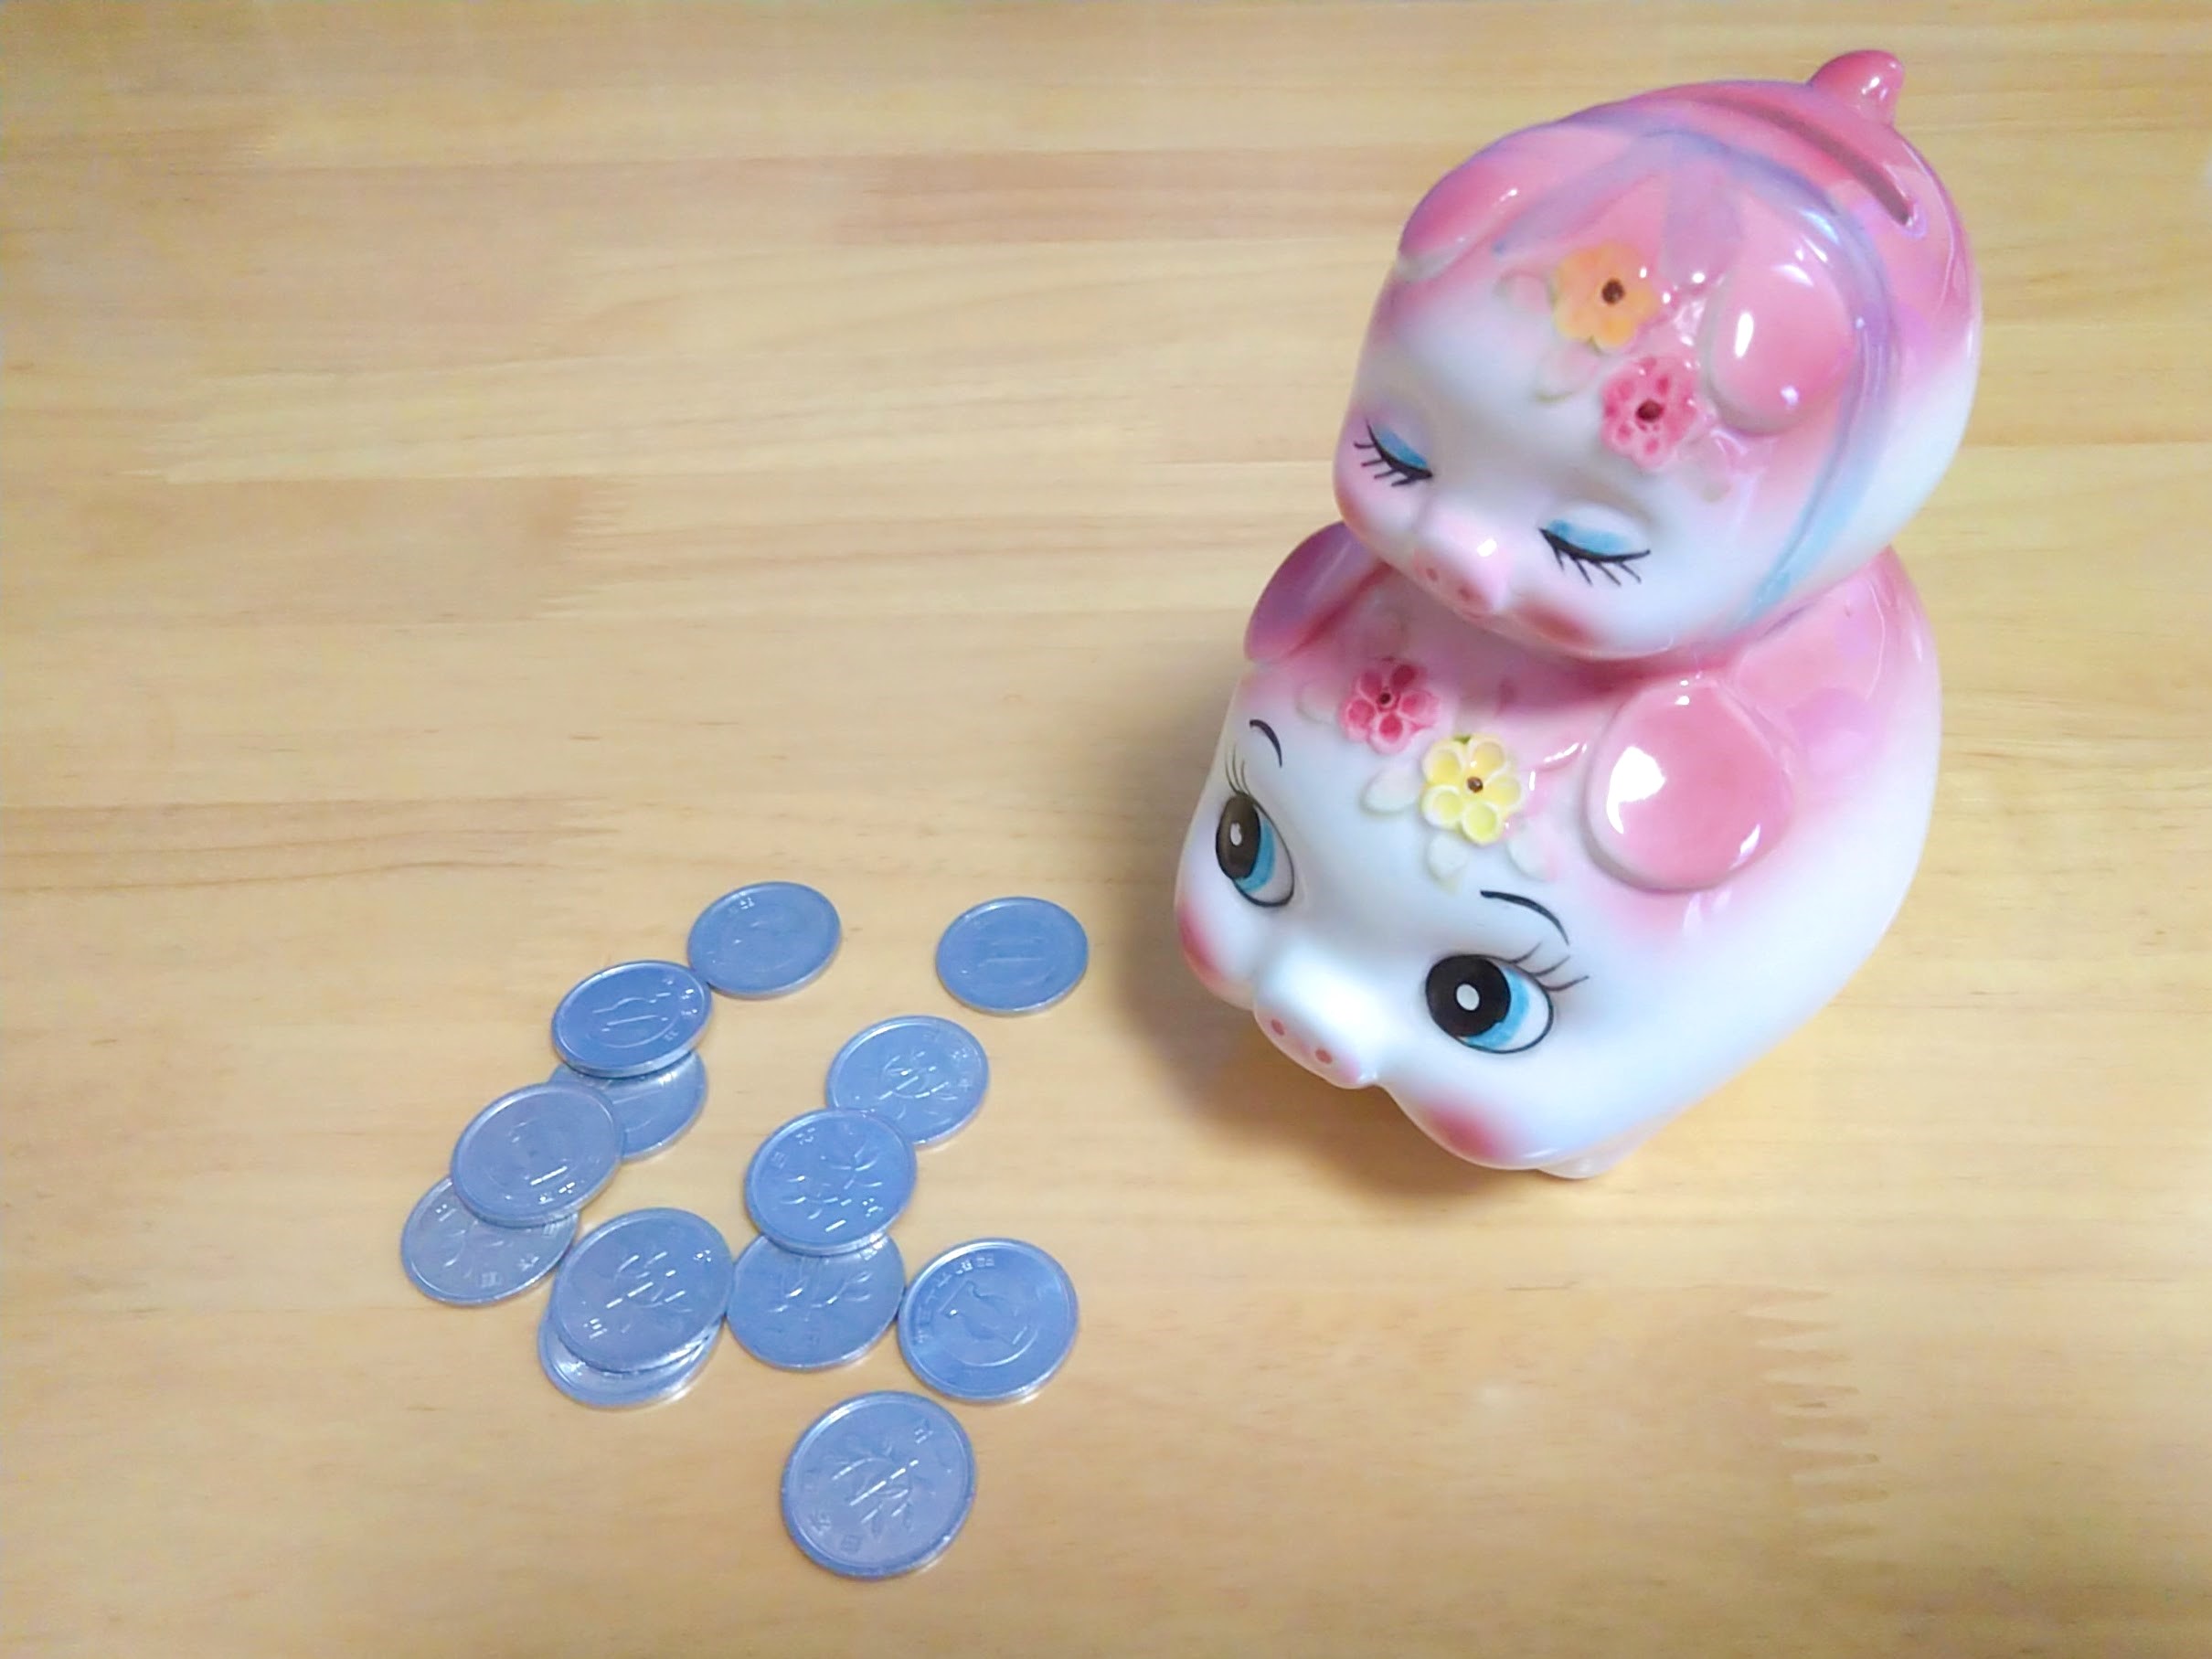 13円と豚の貯金箱の写真